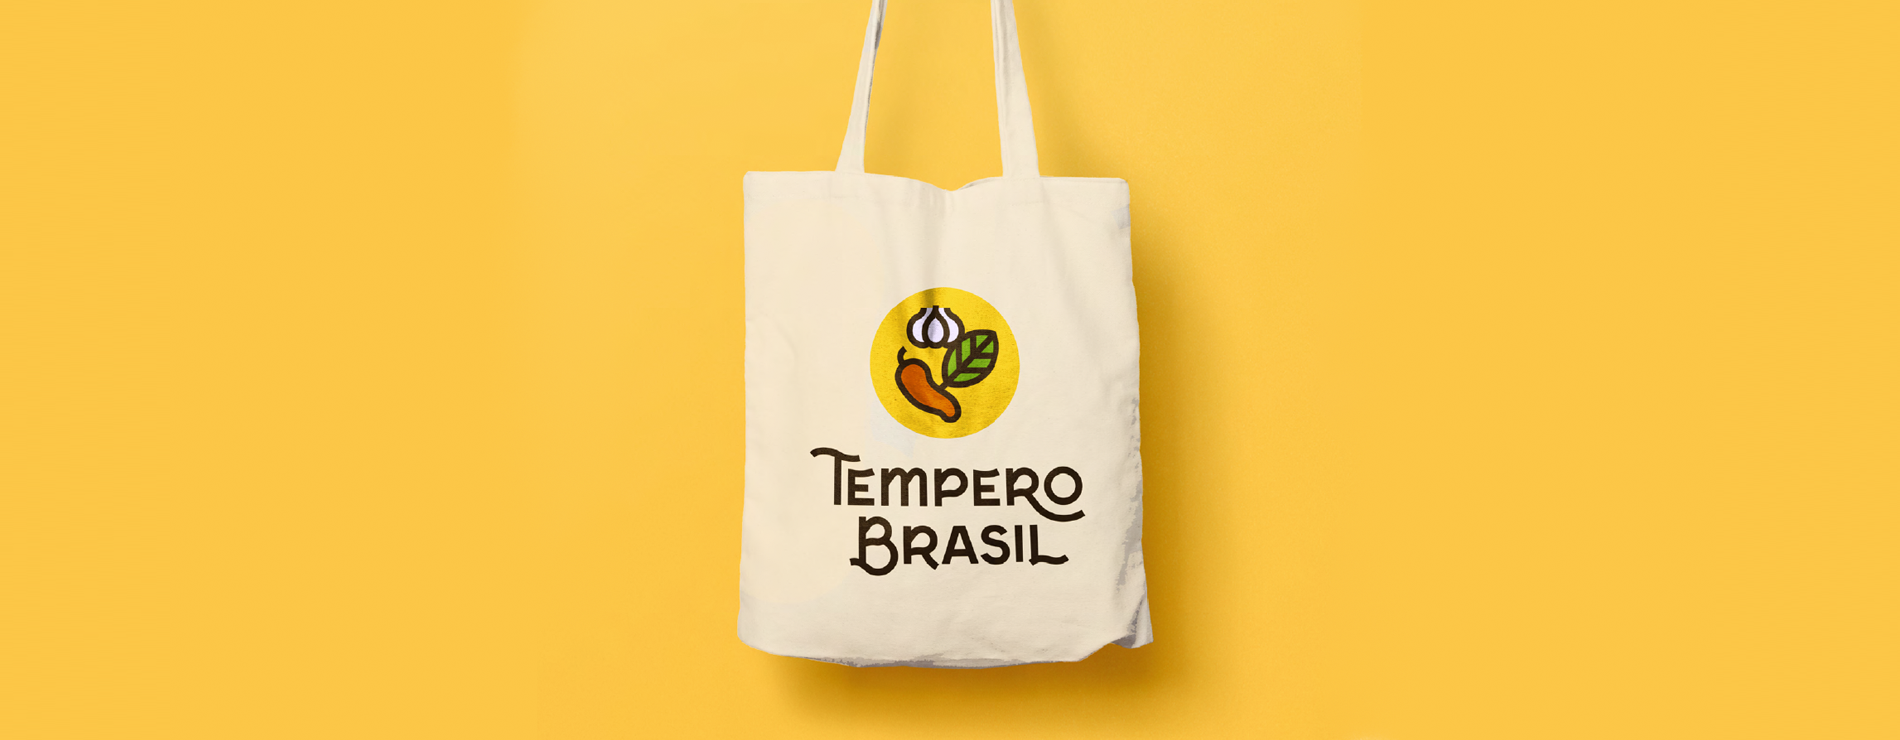 Tempero Brasil